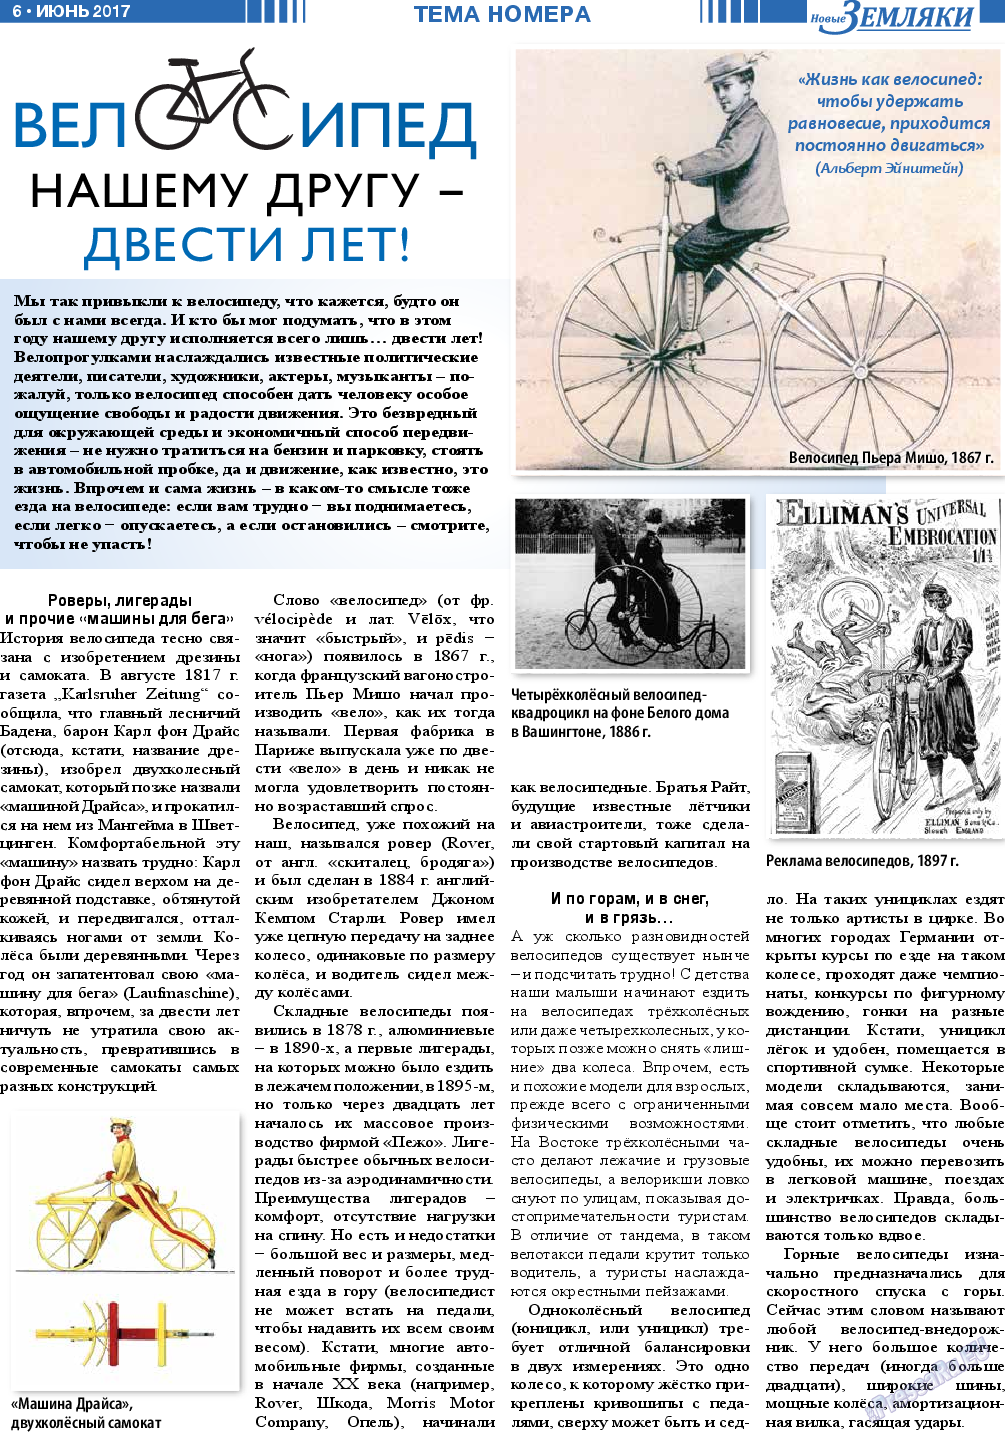 Новые Земляки, газета. 2017 №6 стр.6